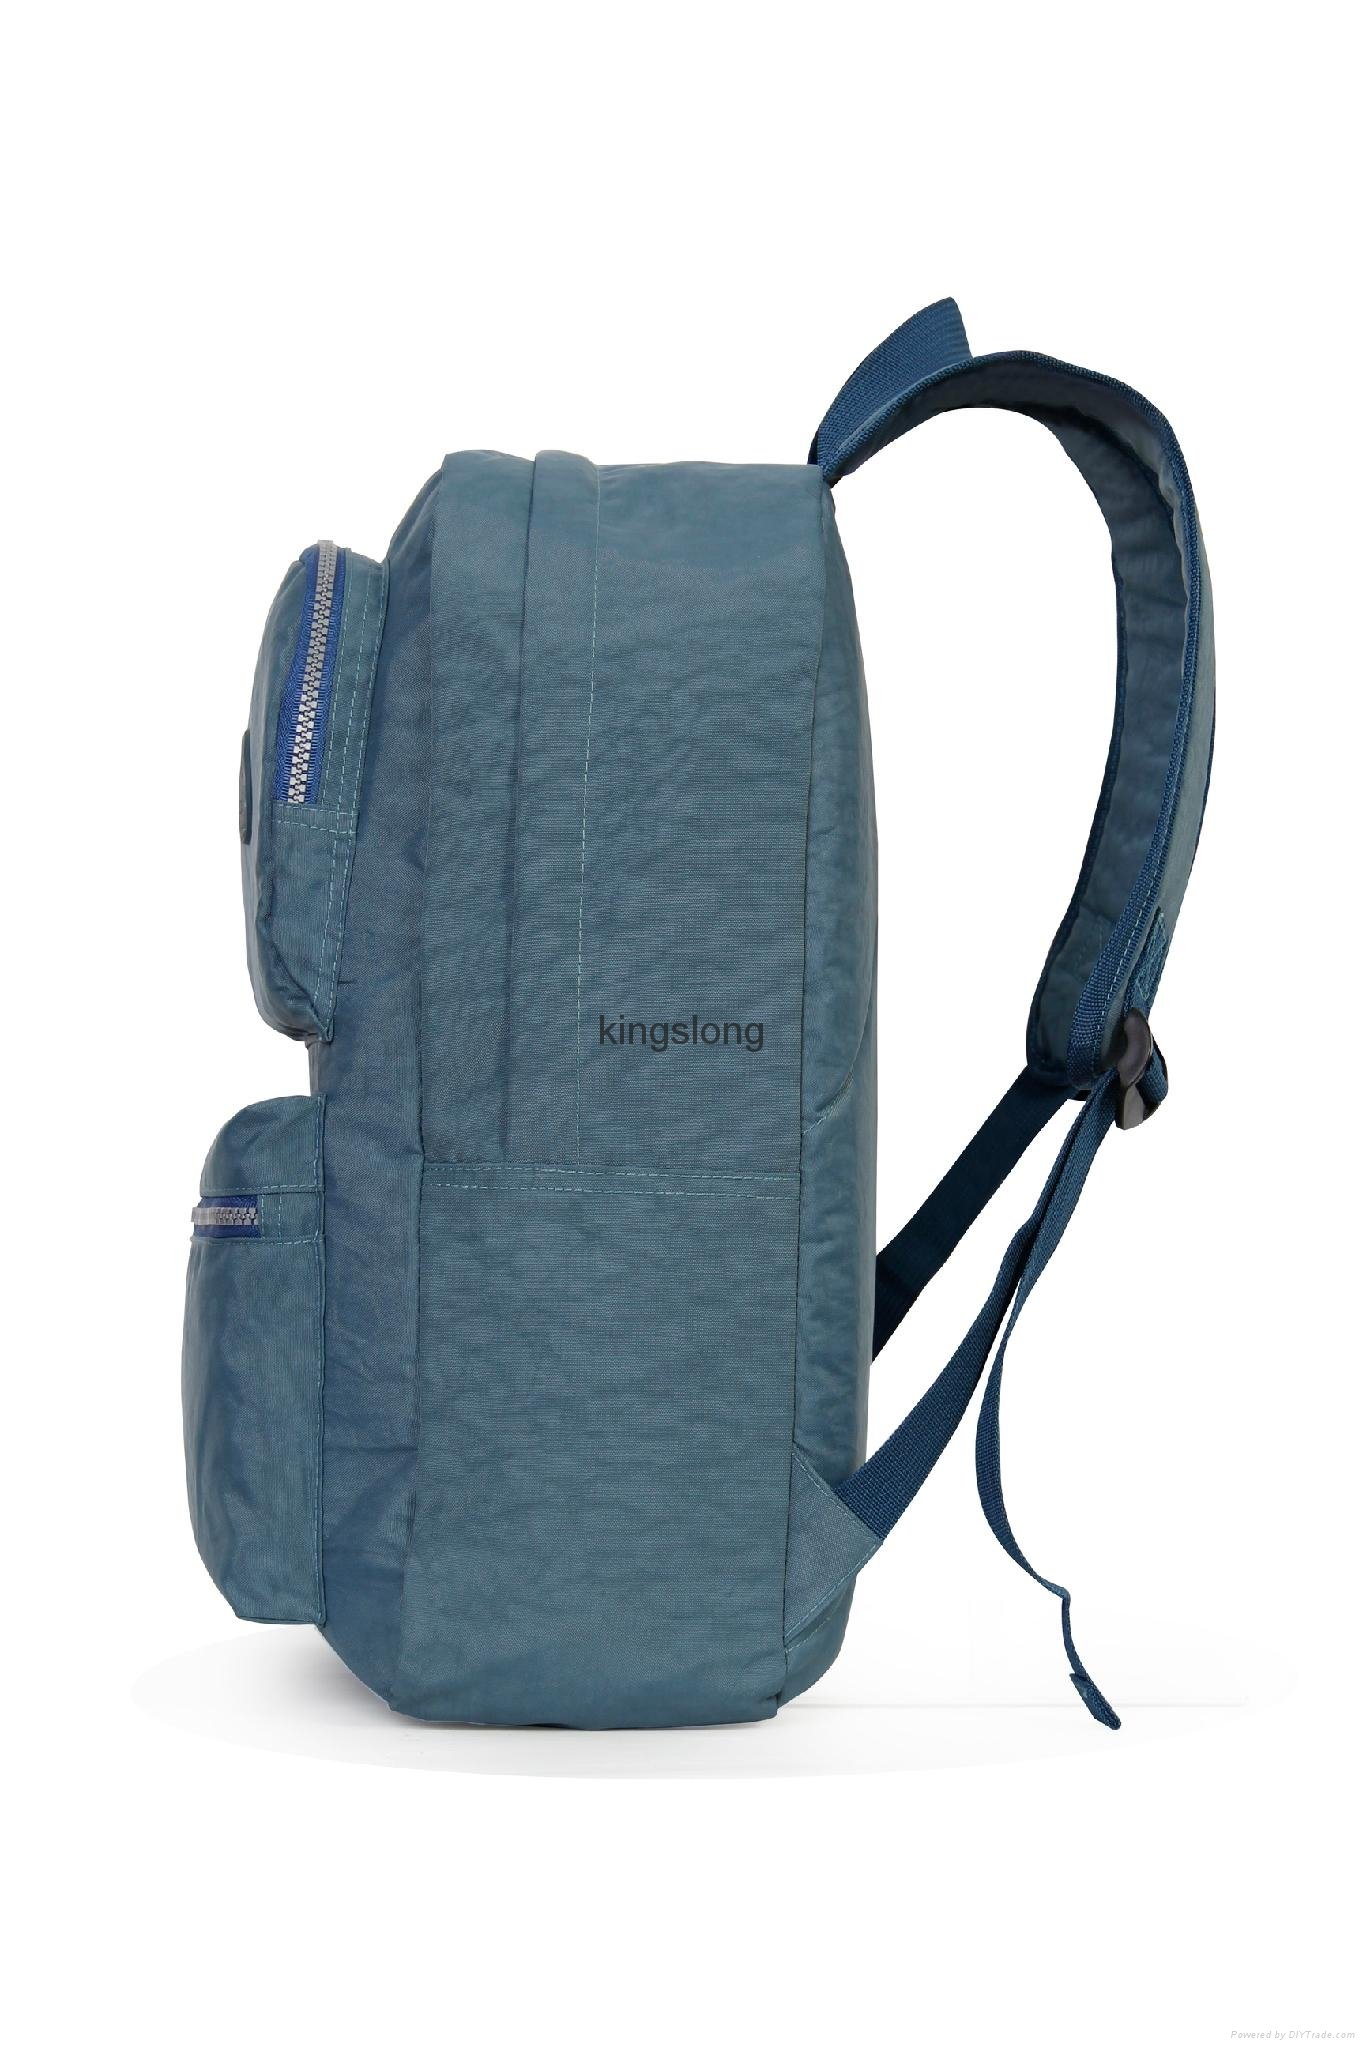 School Youth Trend schoolbag 2015 new ladies female man shoulder bag backpack VA 4